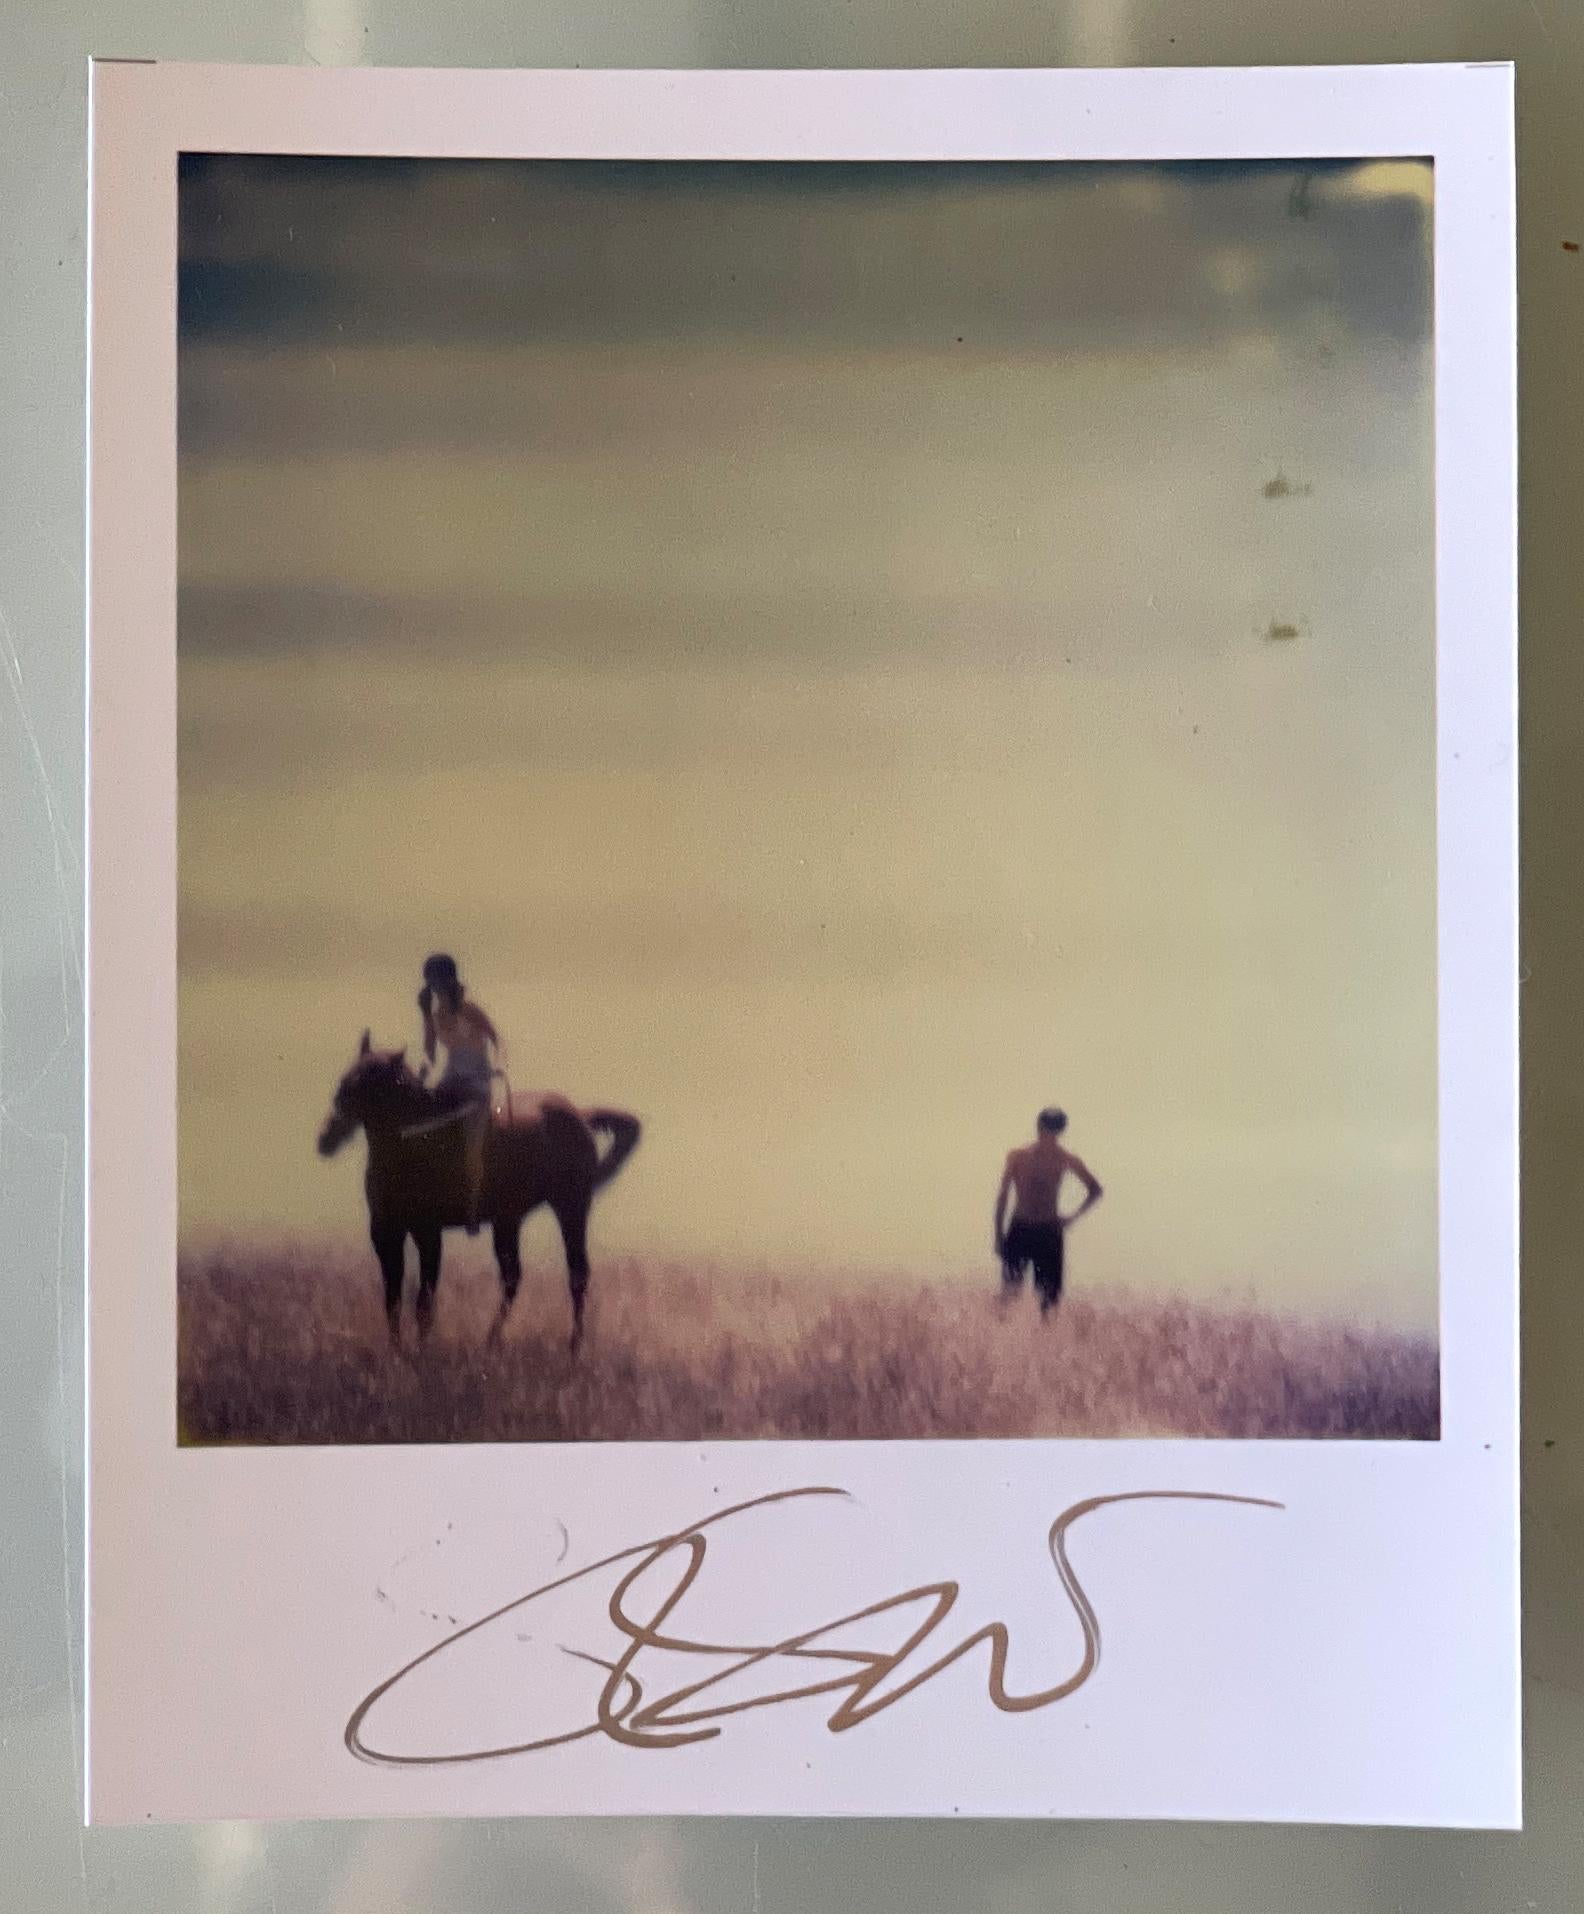 Stefanie Schneiders Mini
Renée's Dream XV (Tage des Himmels) - 2006

vorne signiert, nicht montiert.
Digitale Farbfotografien auf der Grundlage eines Polaroids.

Offene Editionen in Polaroidgröße 1999-2023
10,7 x 8,8cm (Bild 7,9x7,7cm)
